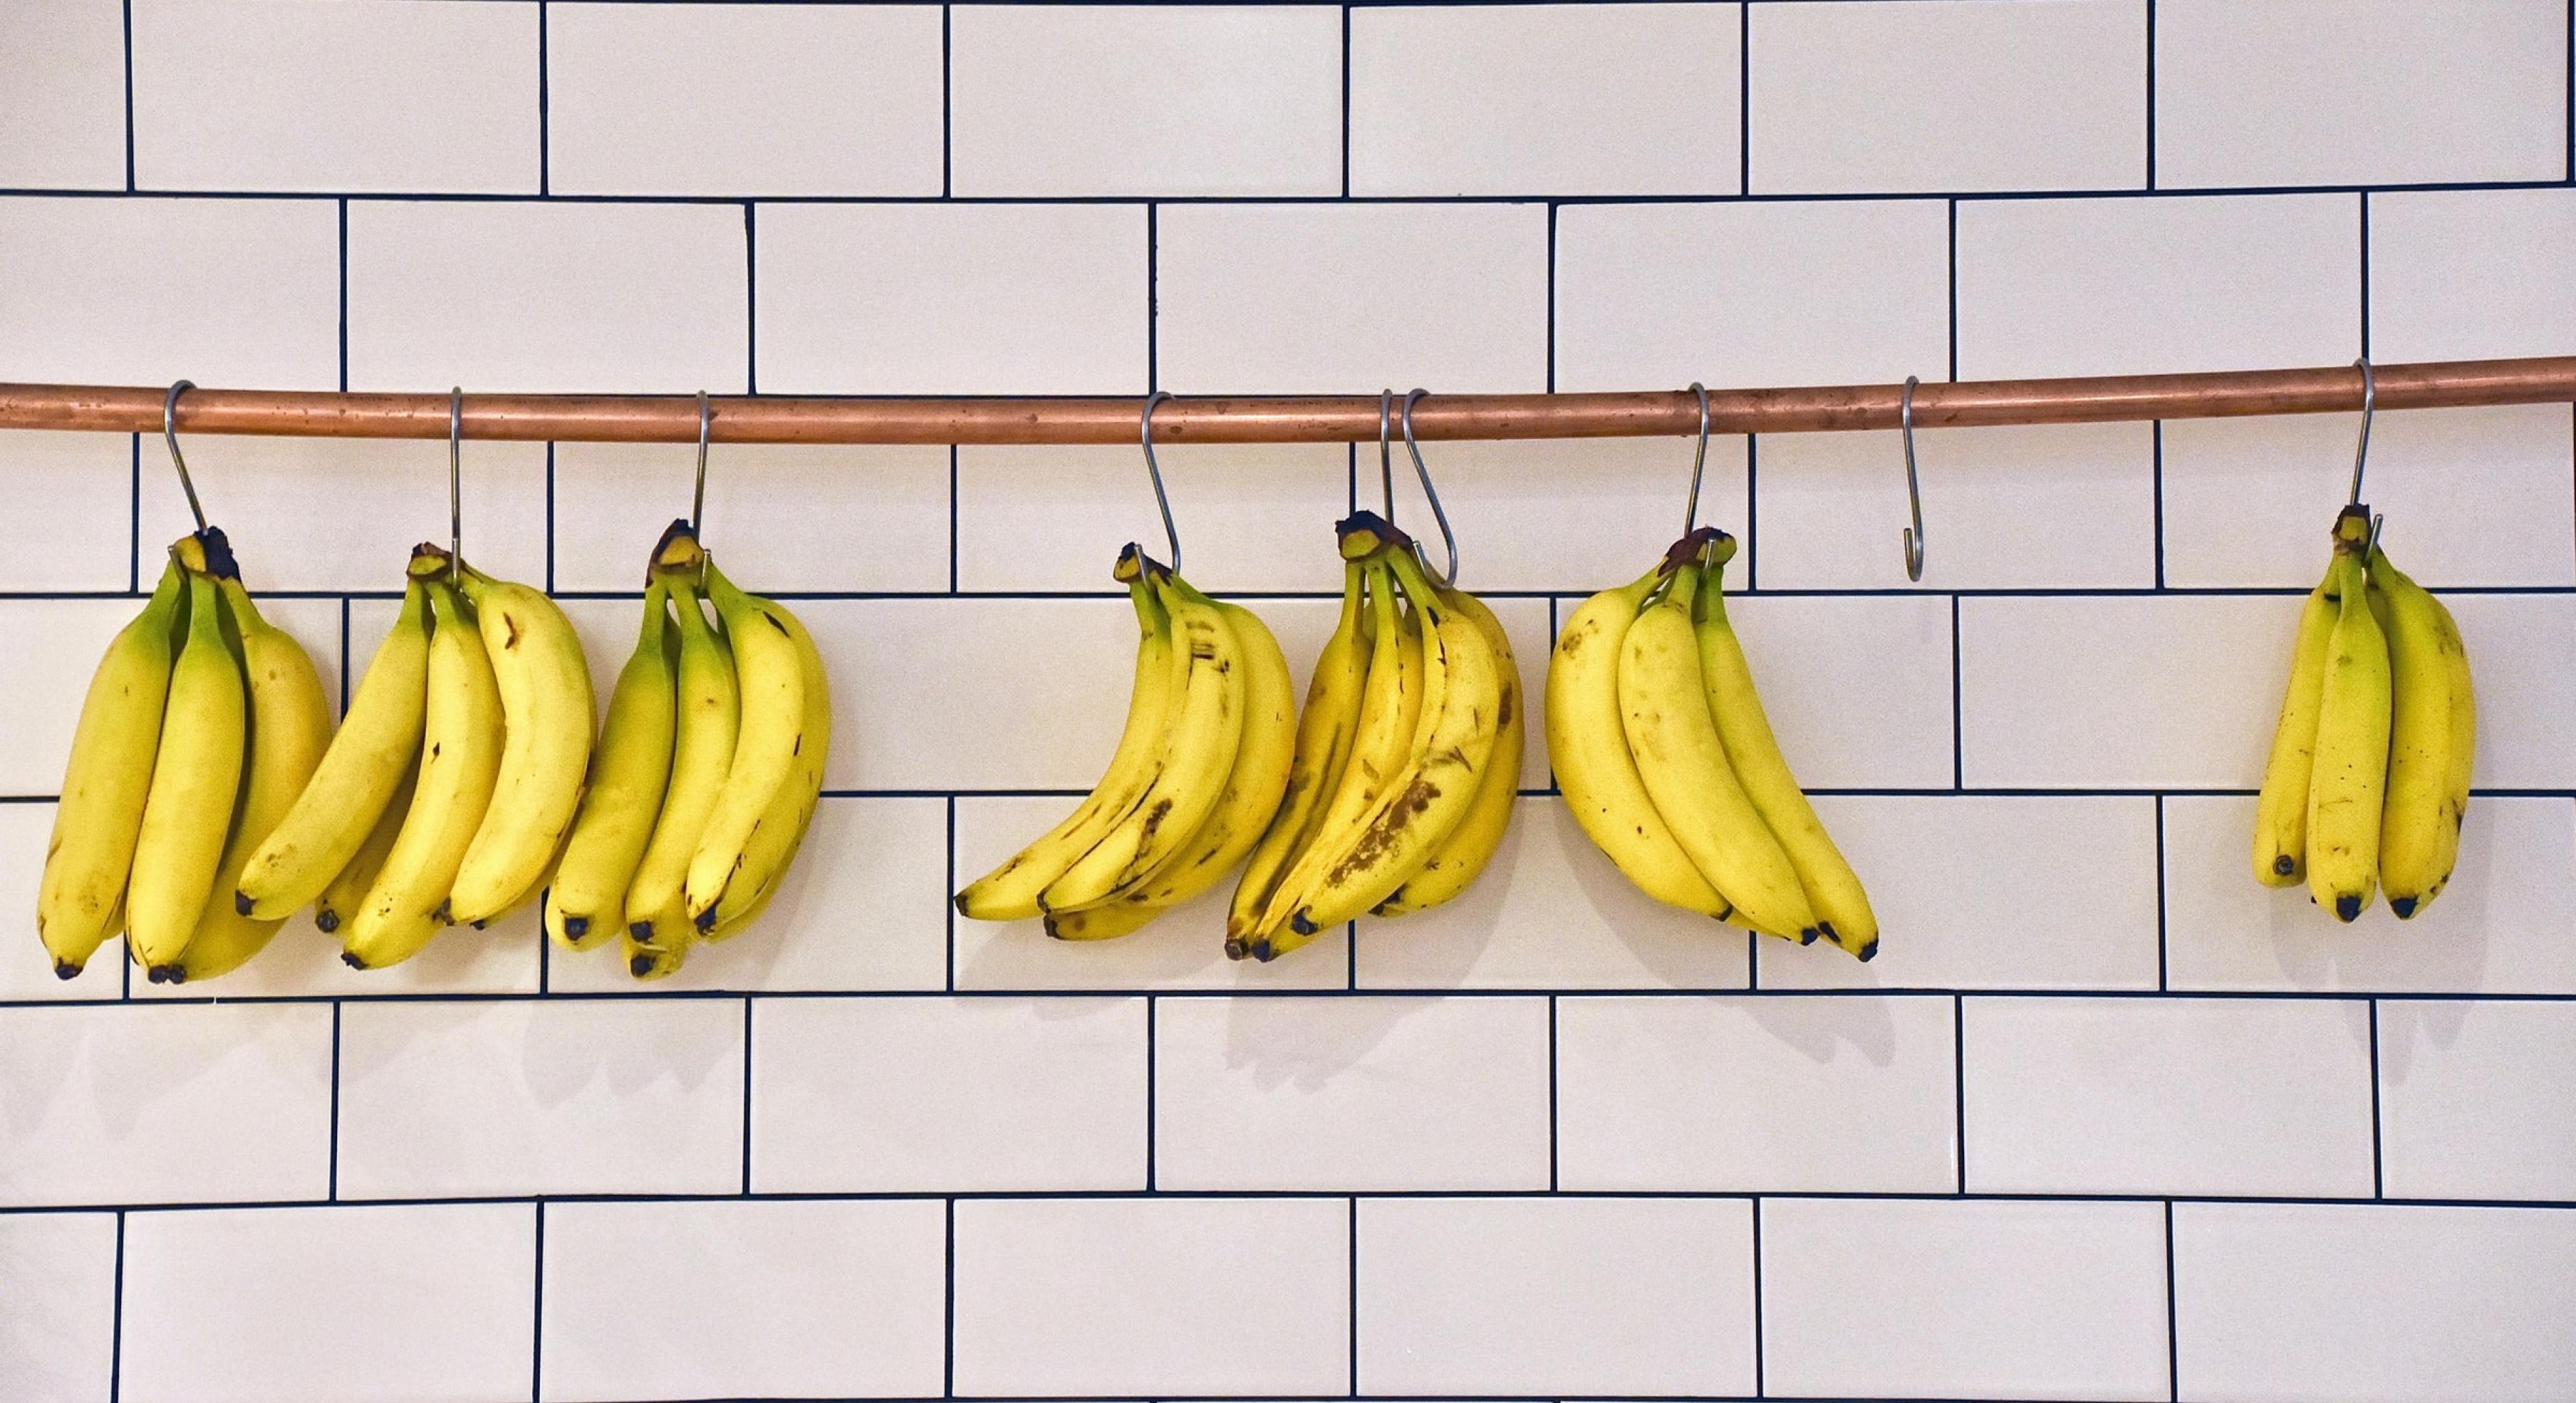 Bananenbündel, die an einer Stange vor einer gekachelten Wand hängen